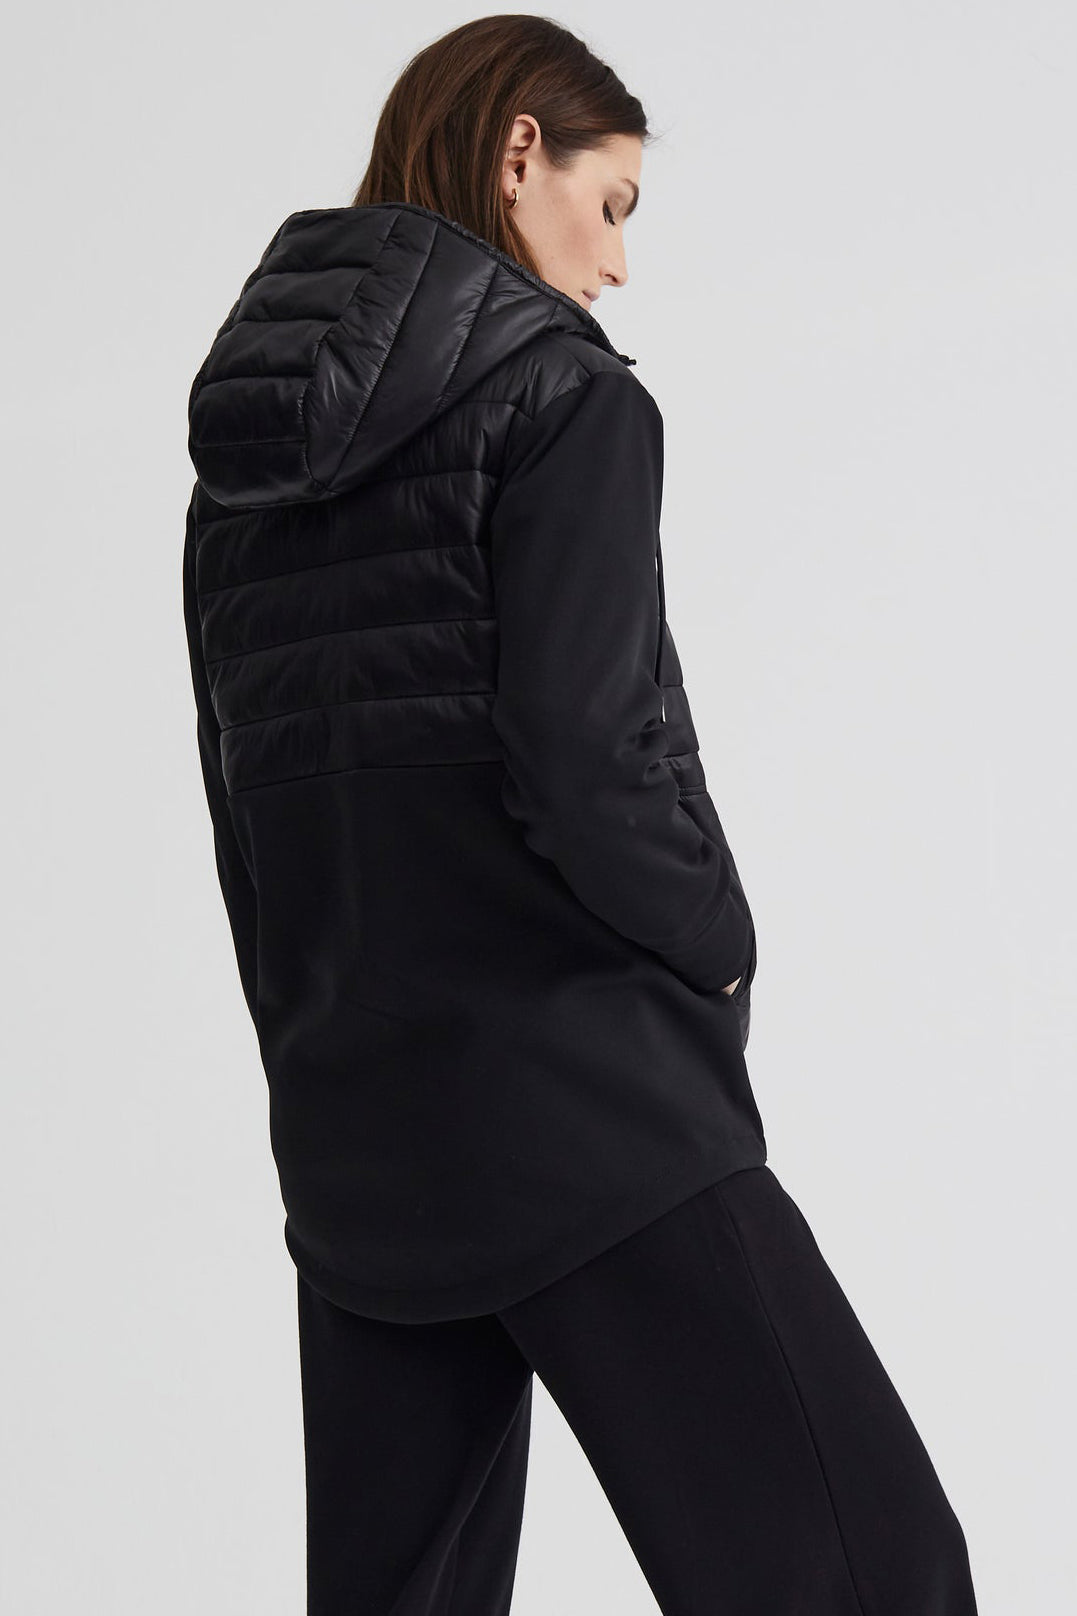 VARLEY Kerwin Jacket in Black